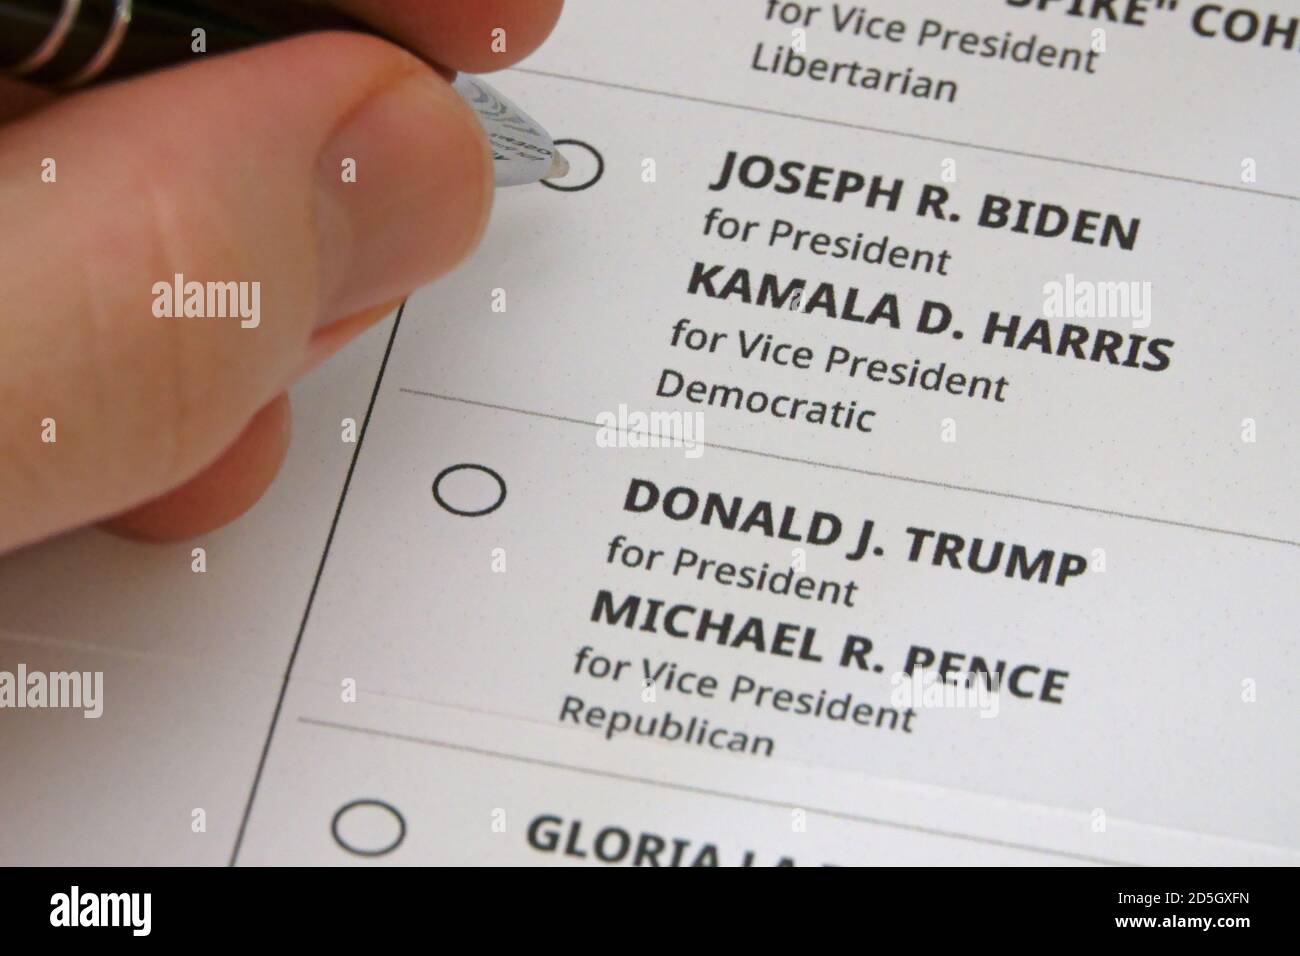 Los Angeles, CA / USA - 12 octobre 2020: Une main tenant un stylo est montré sur le point de remplir une bulle pour voter pour Joseph ( Joe ) R. Biden comme président. Banque D'Images